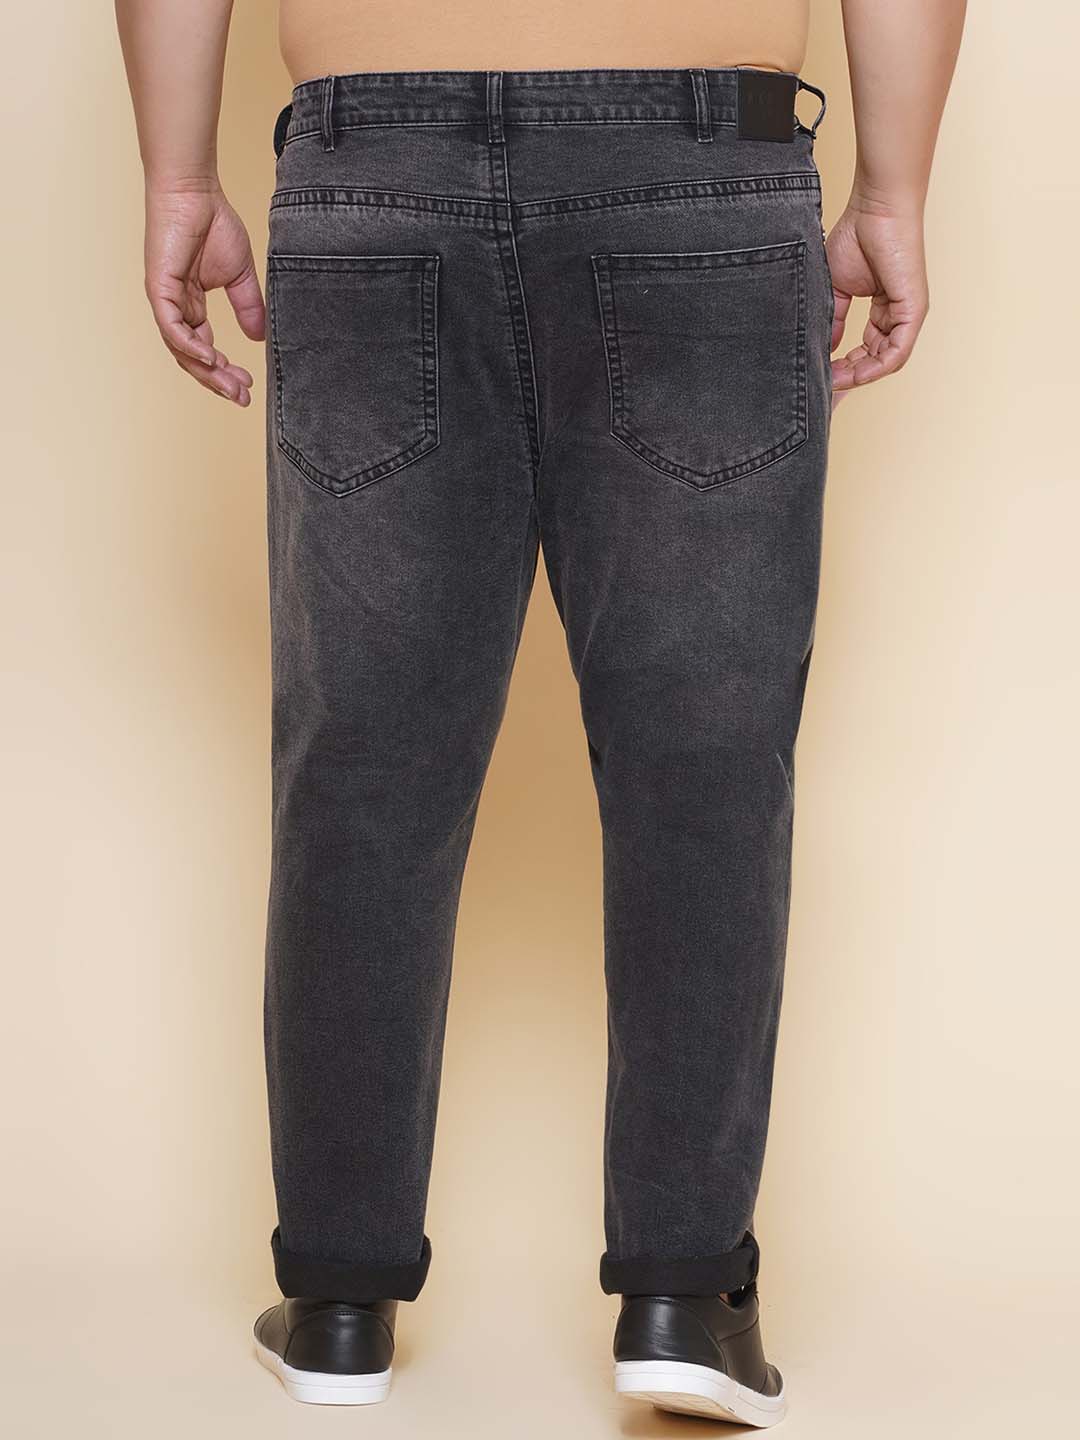 bottomwear/jeans/JPJ27103/jpj27103-5.jpg